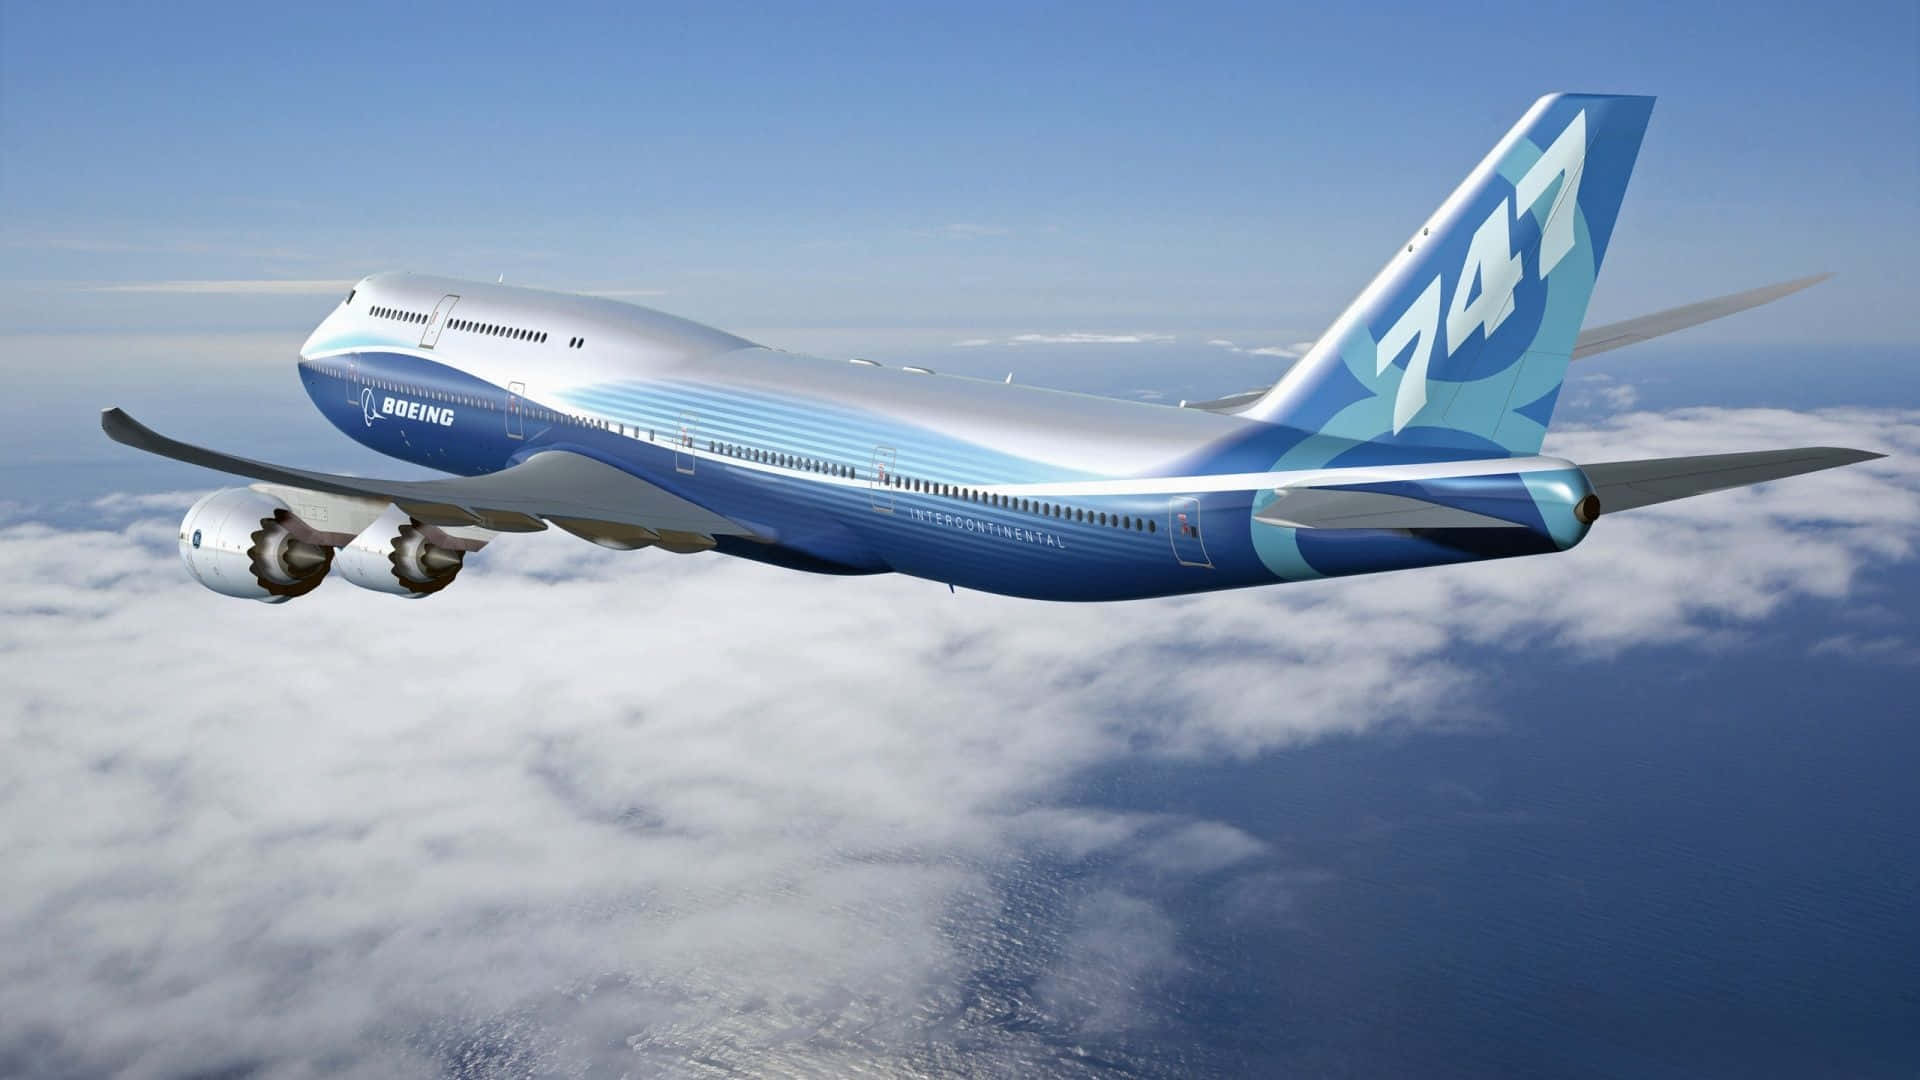 747flugzeug In Der Luft Wallpaper